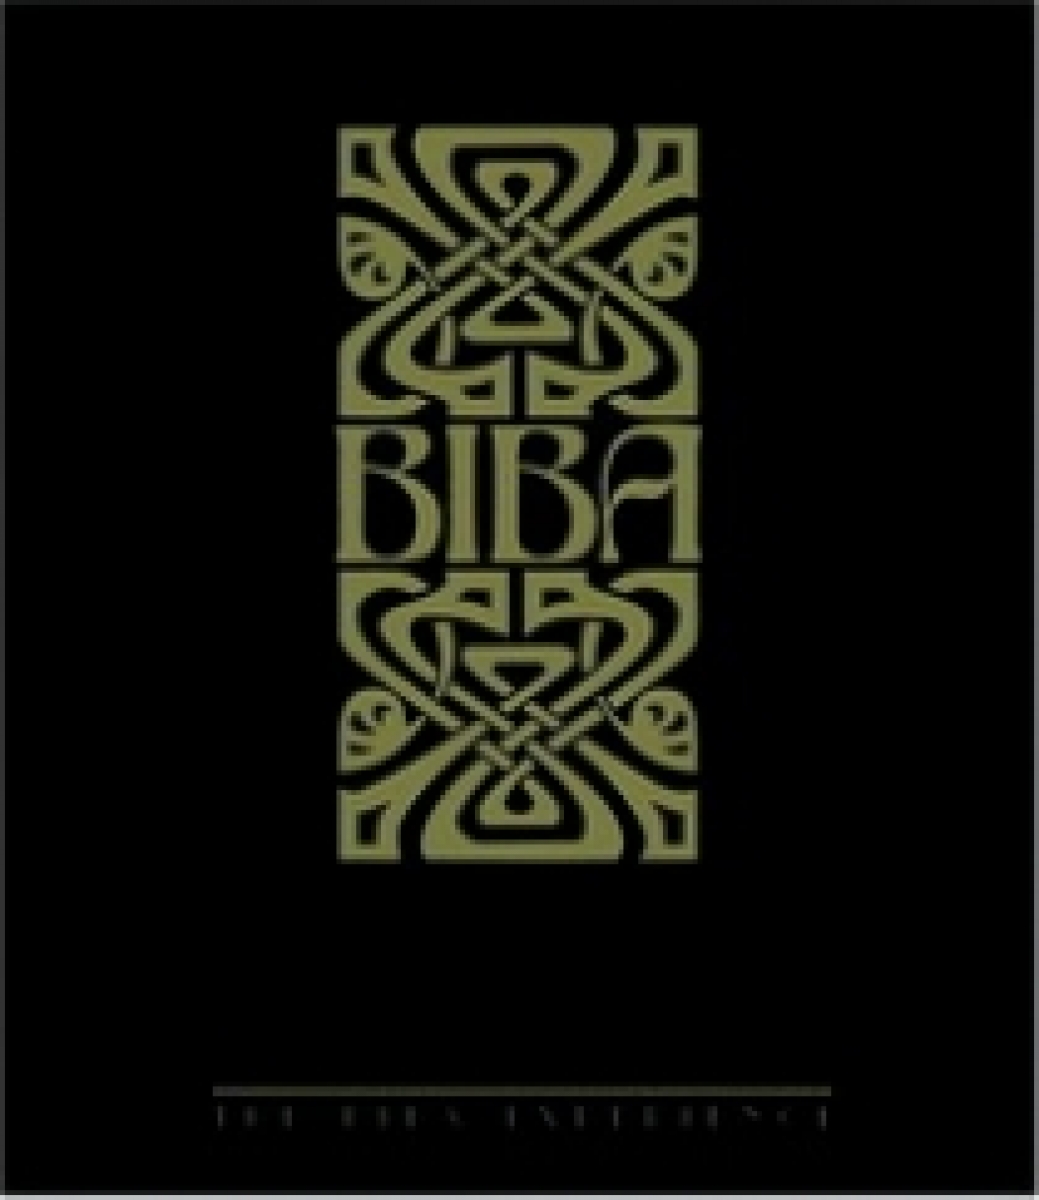 Turner A. Biba: The Biba Experience 